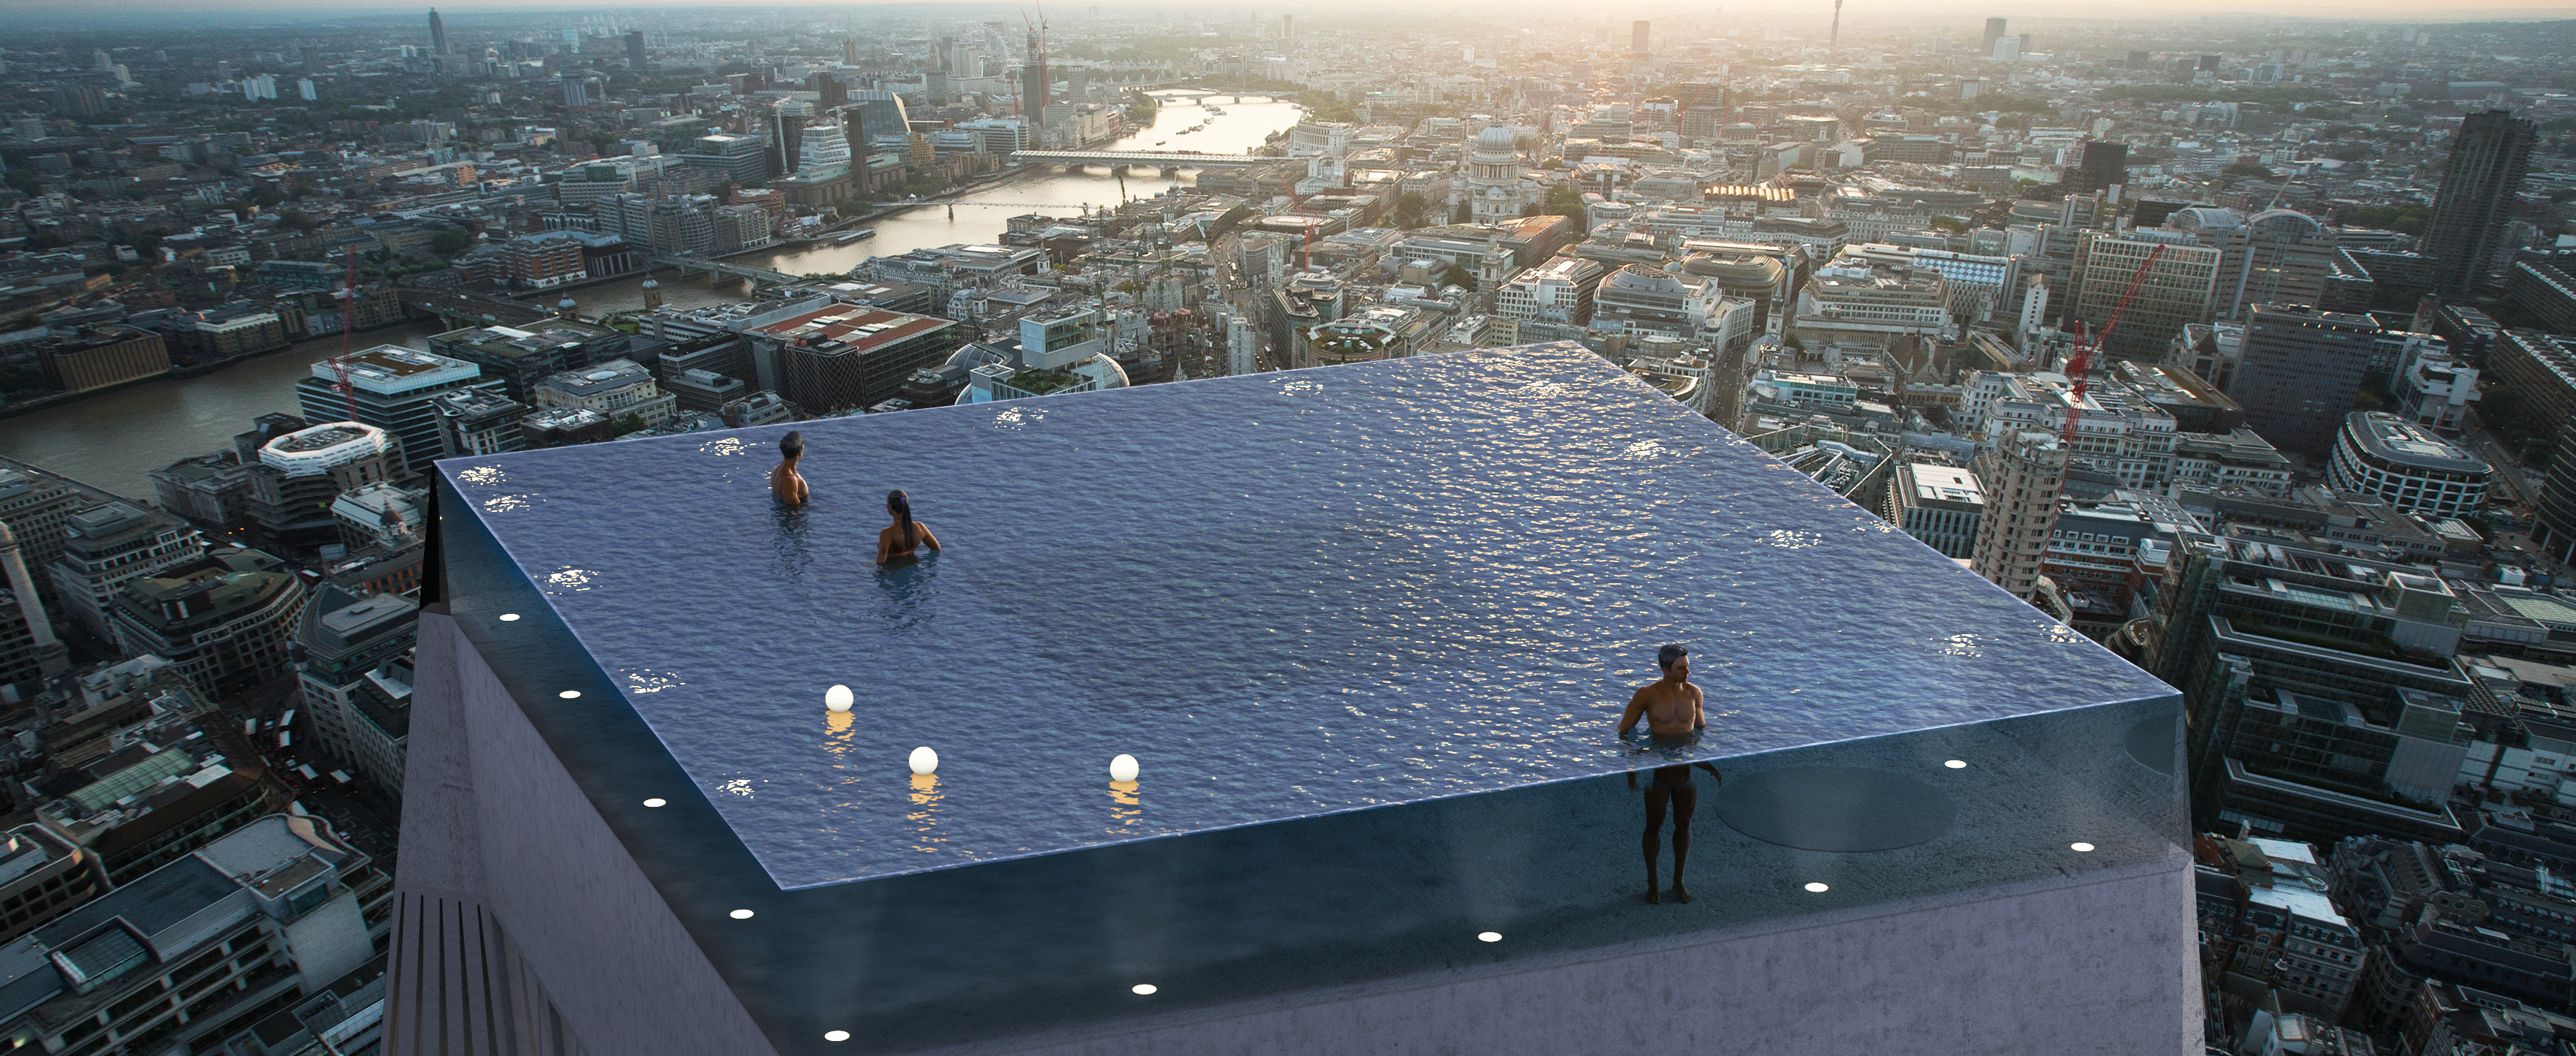 La piscine aux parois transparentes sera installée au sommet de l’un des plus hauts gratte-ciels de Londres. © Courtesy of Compass Pool